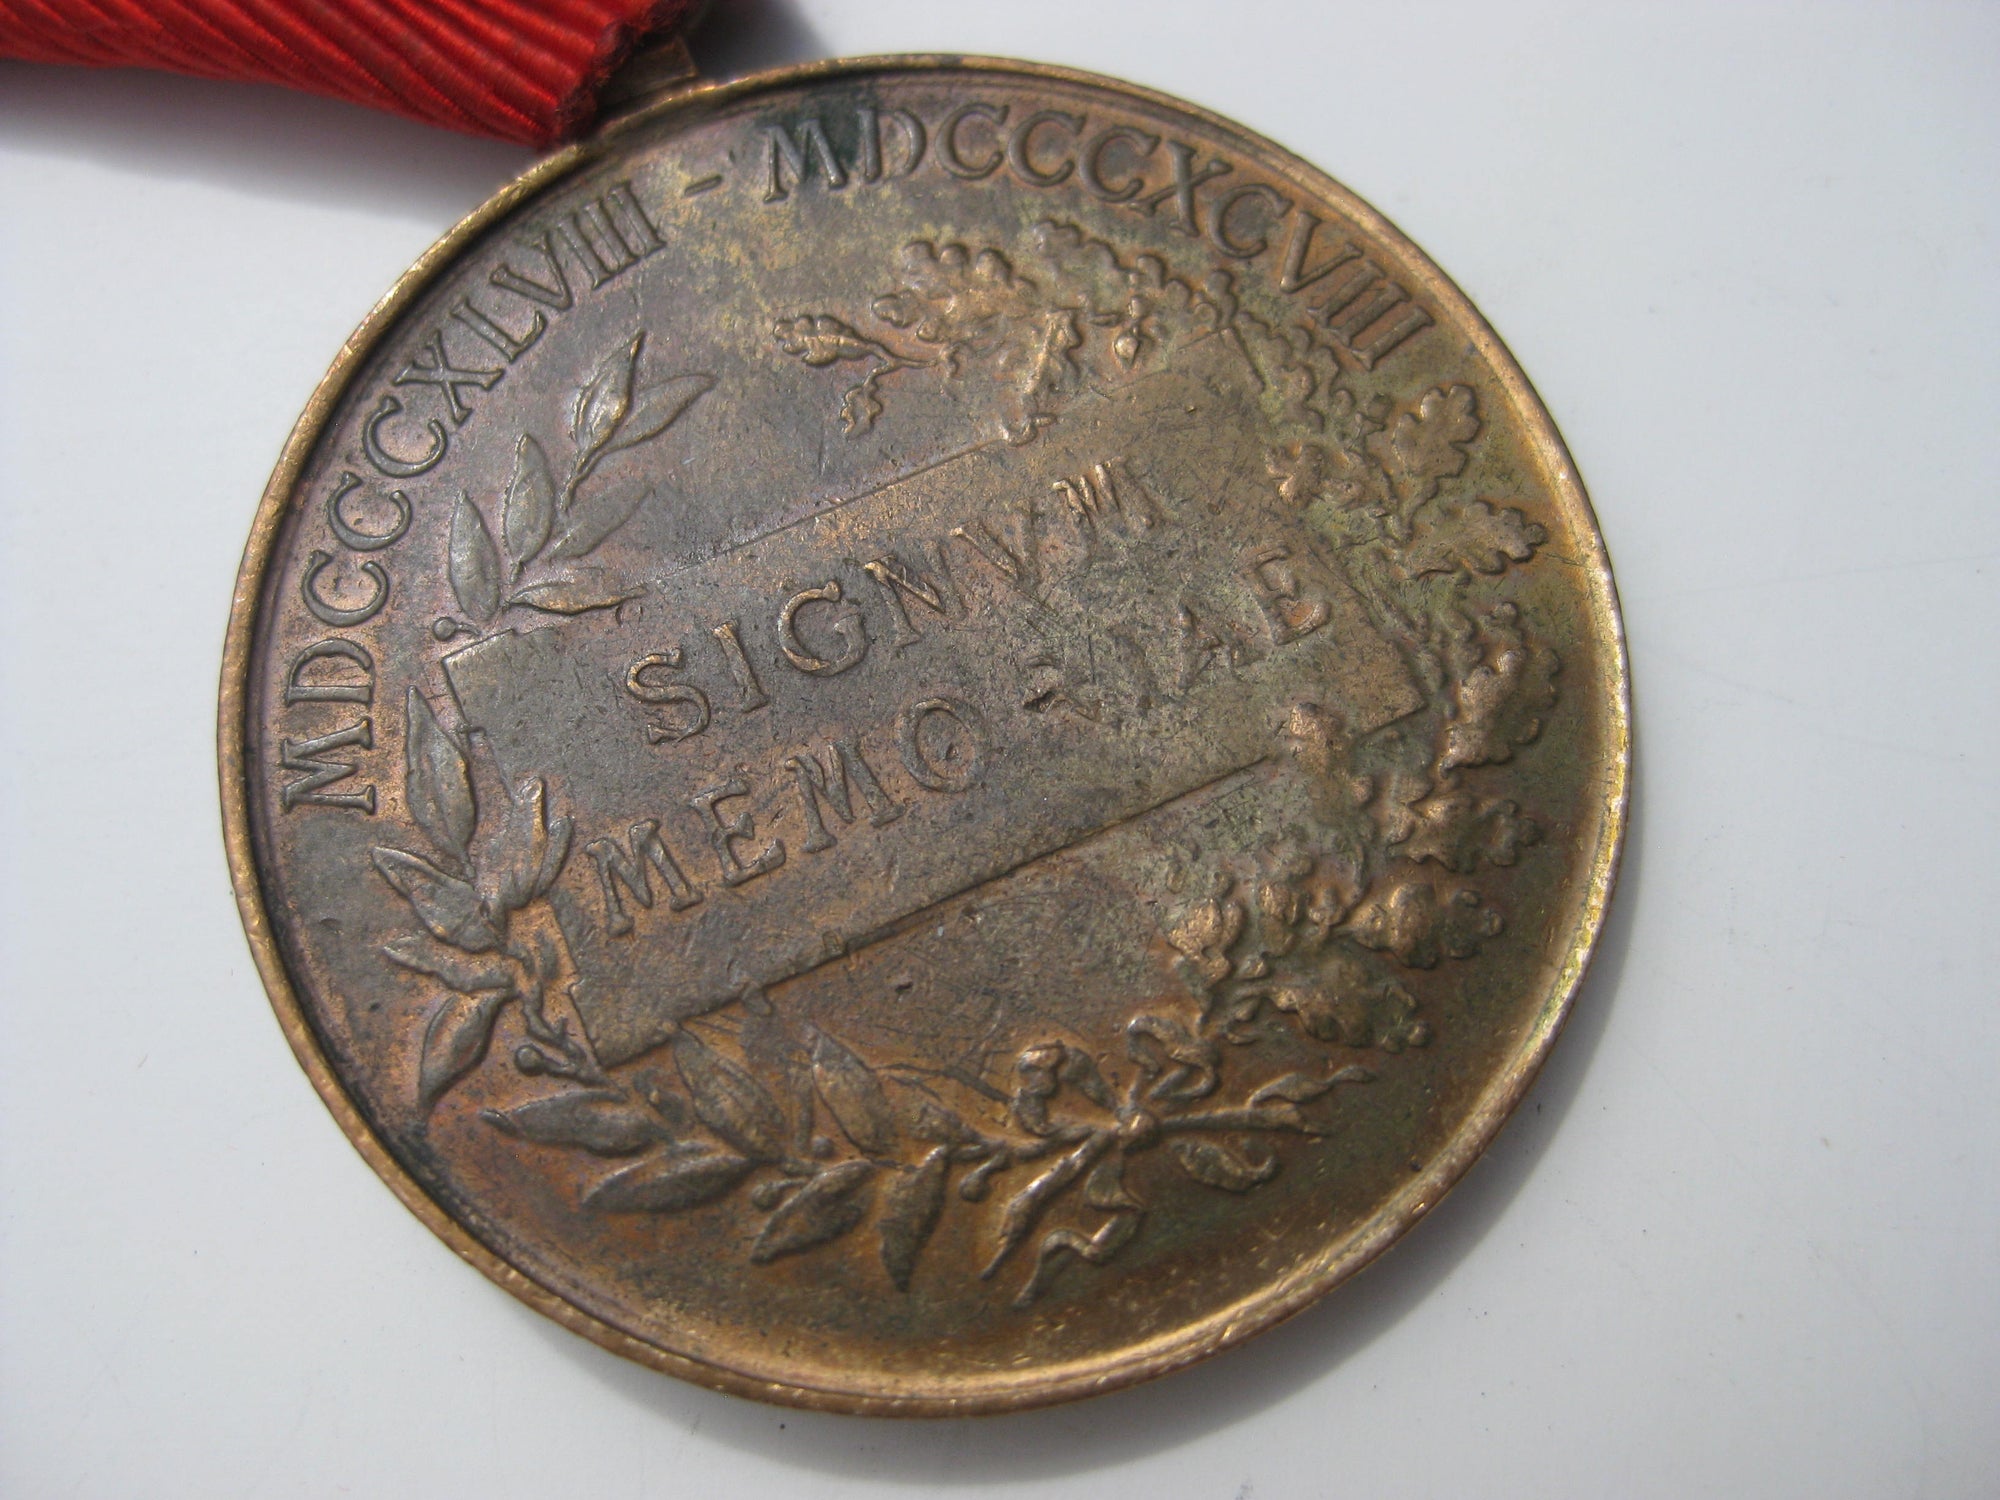 H.W. Militärverdienstmedaille Signum Memoriae in Bronze Österreich